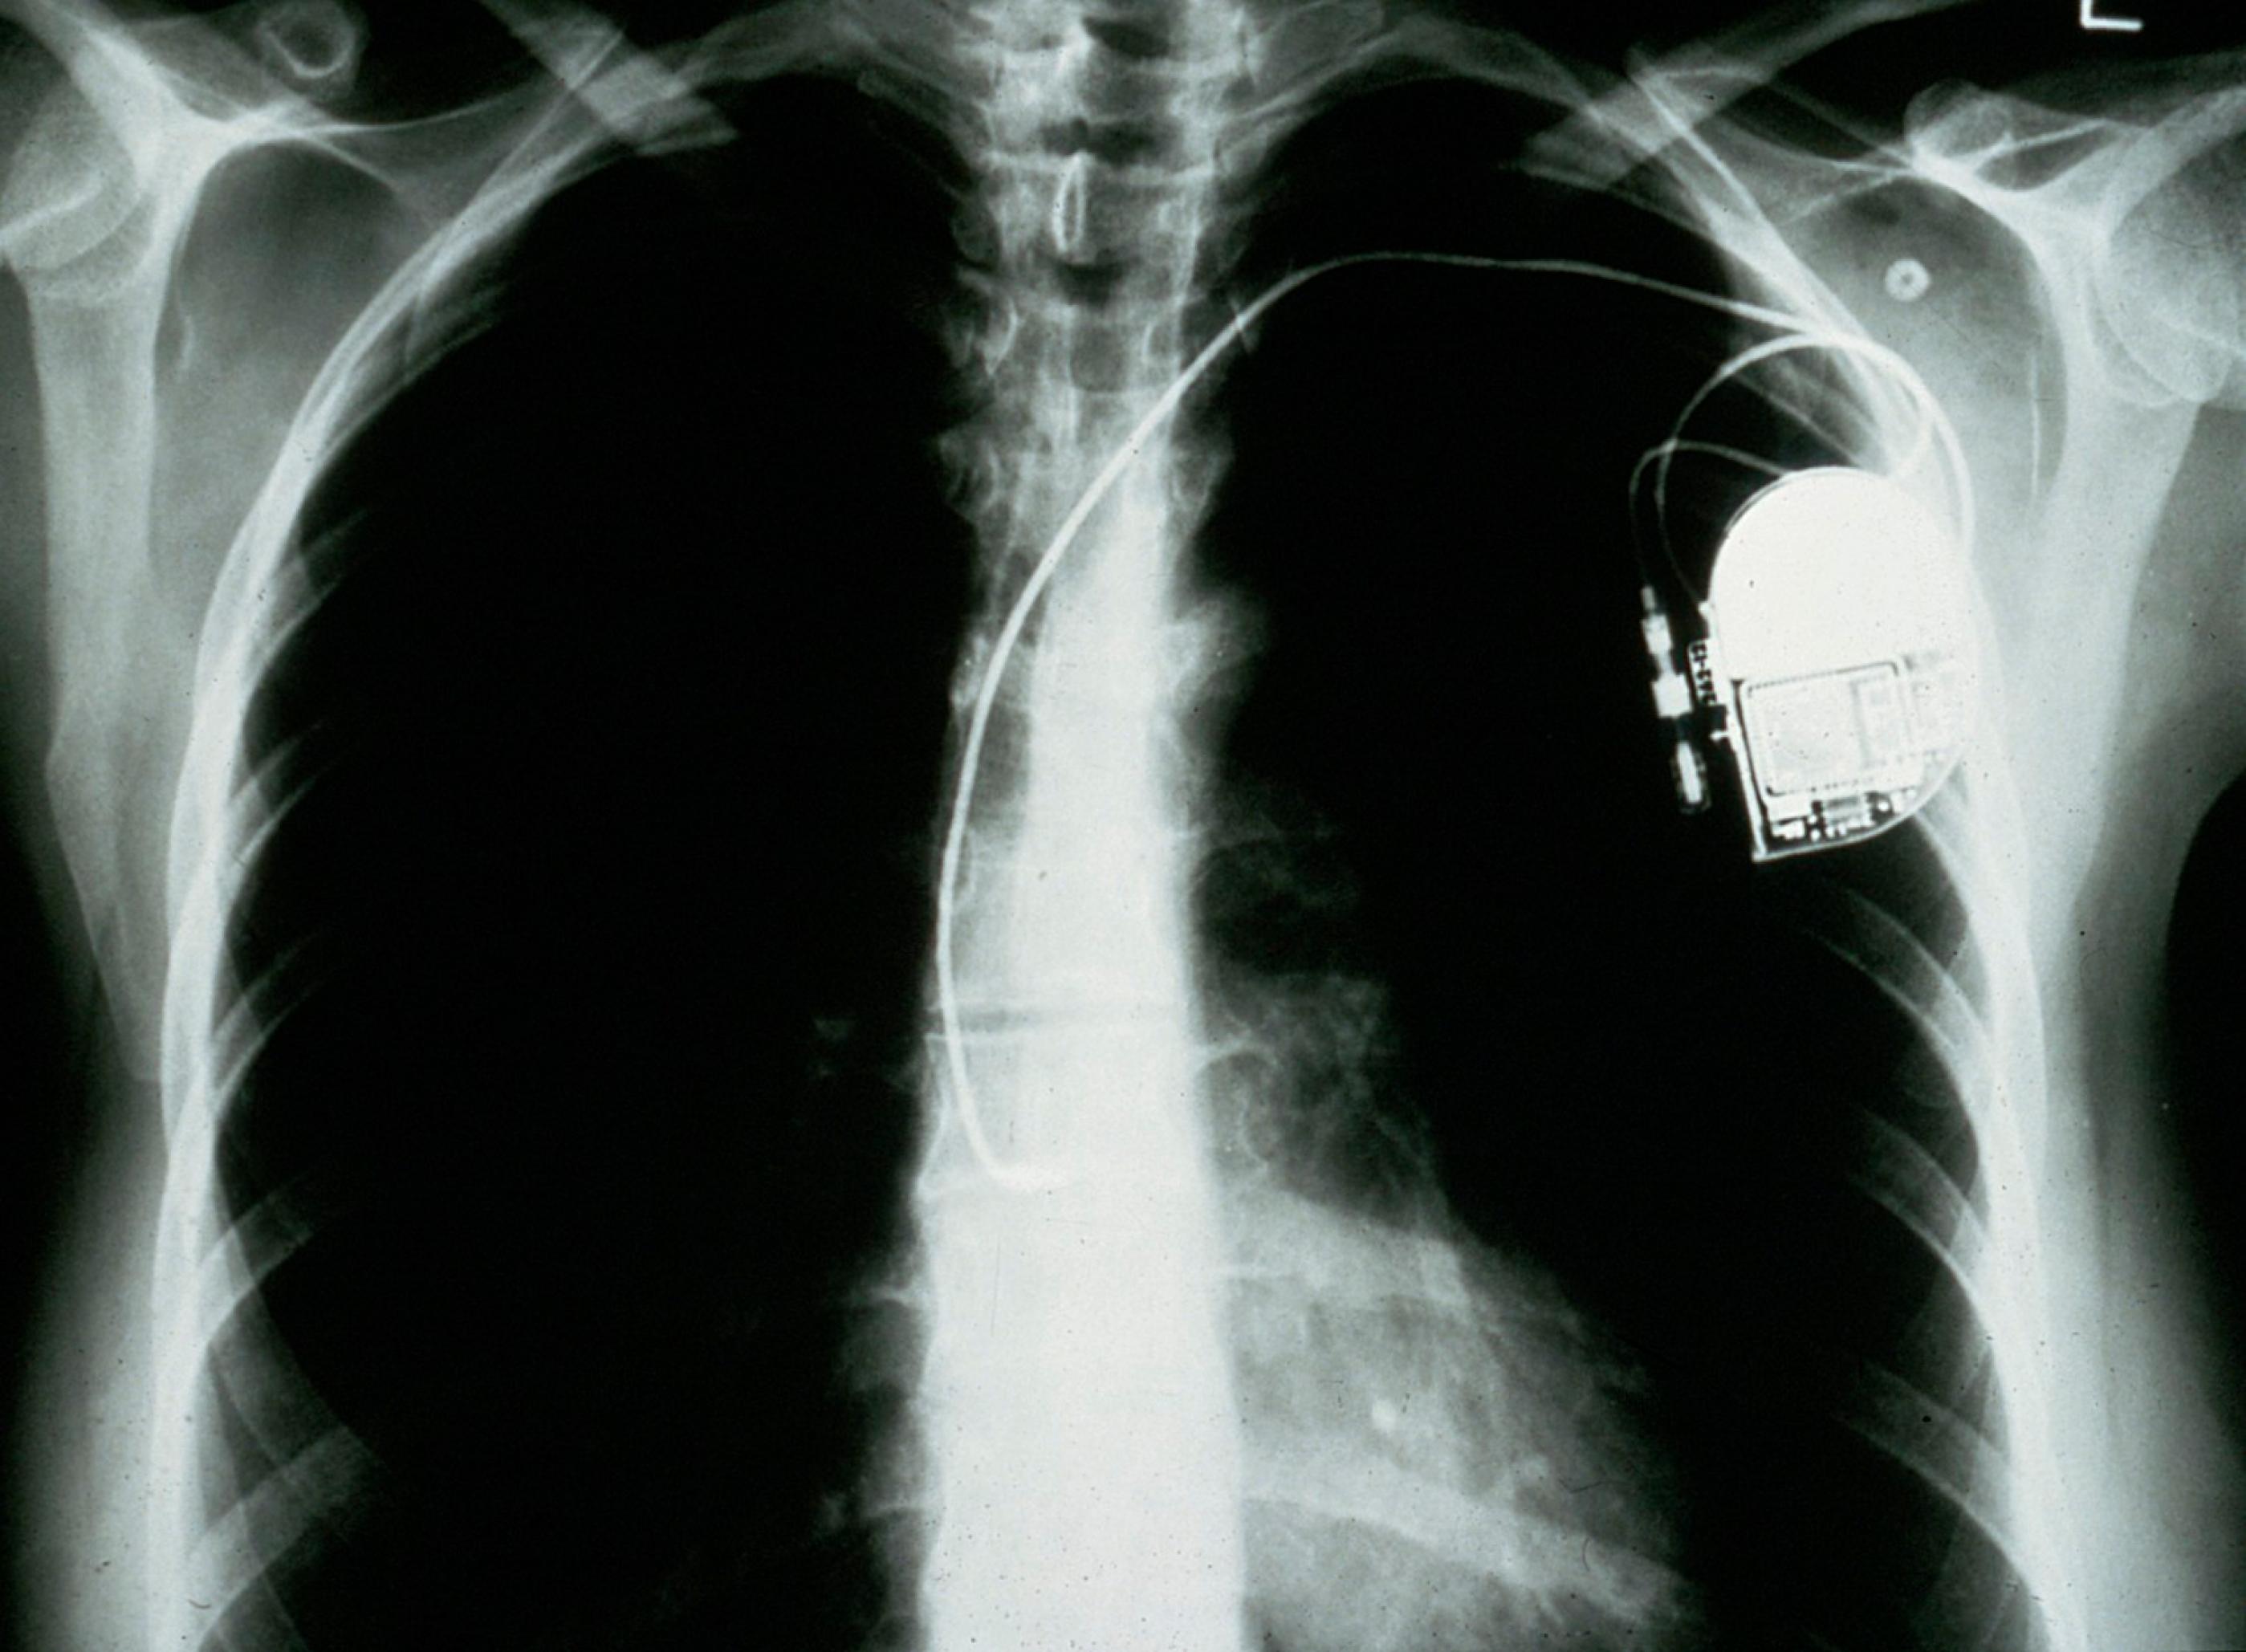 Röntgenbild mit implantiertem Herzschrittmacher